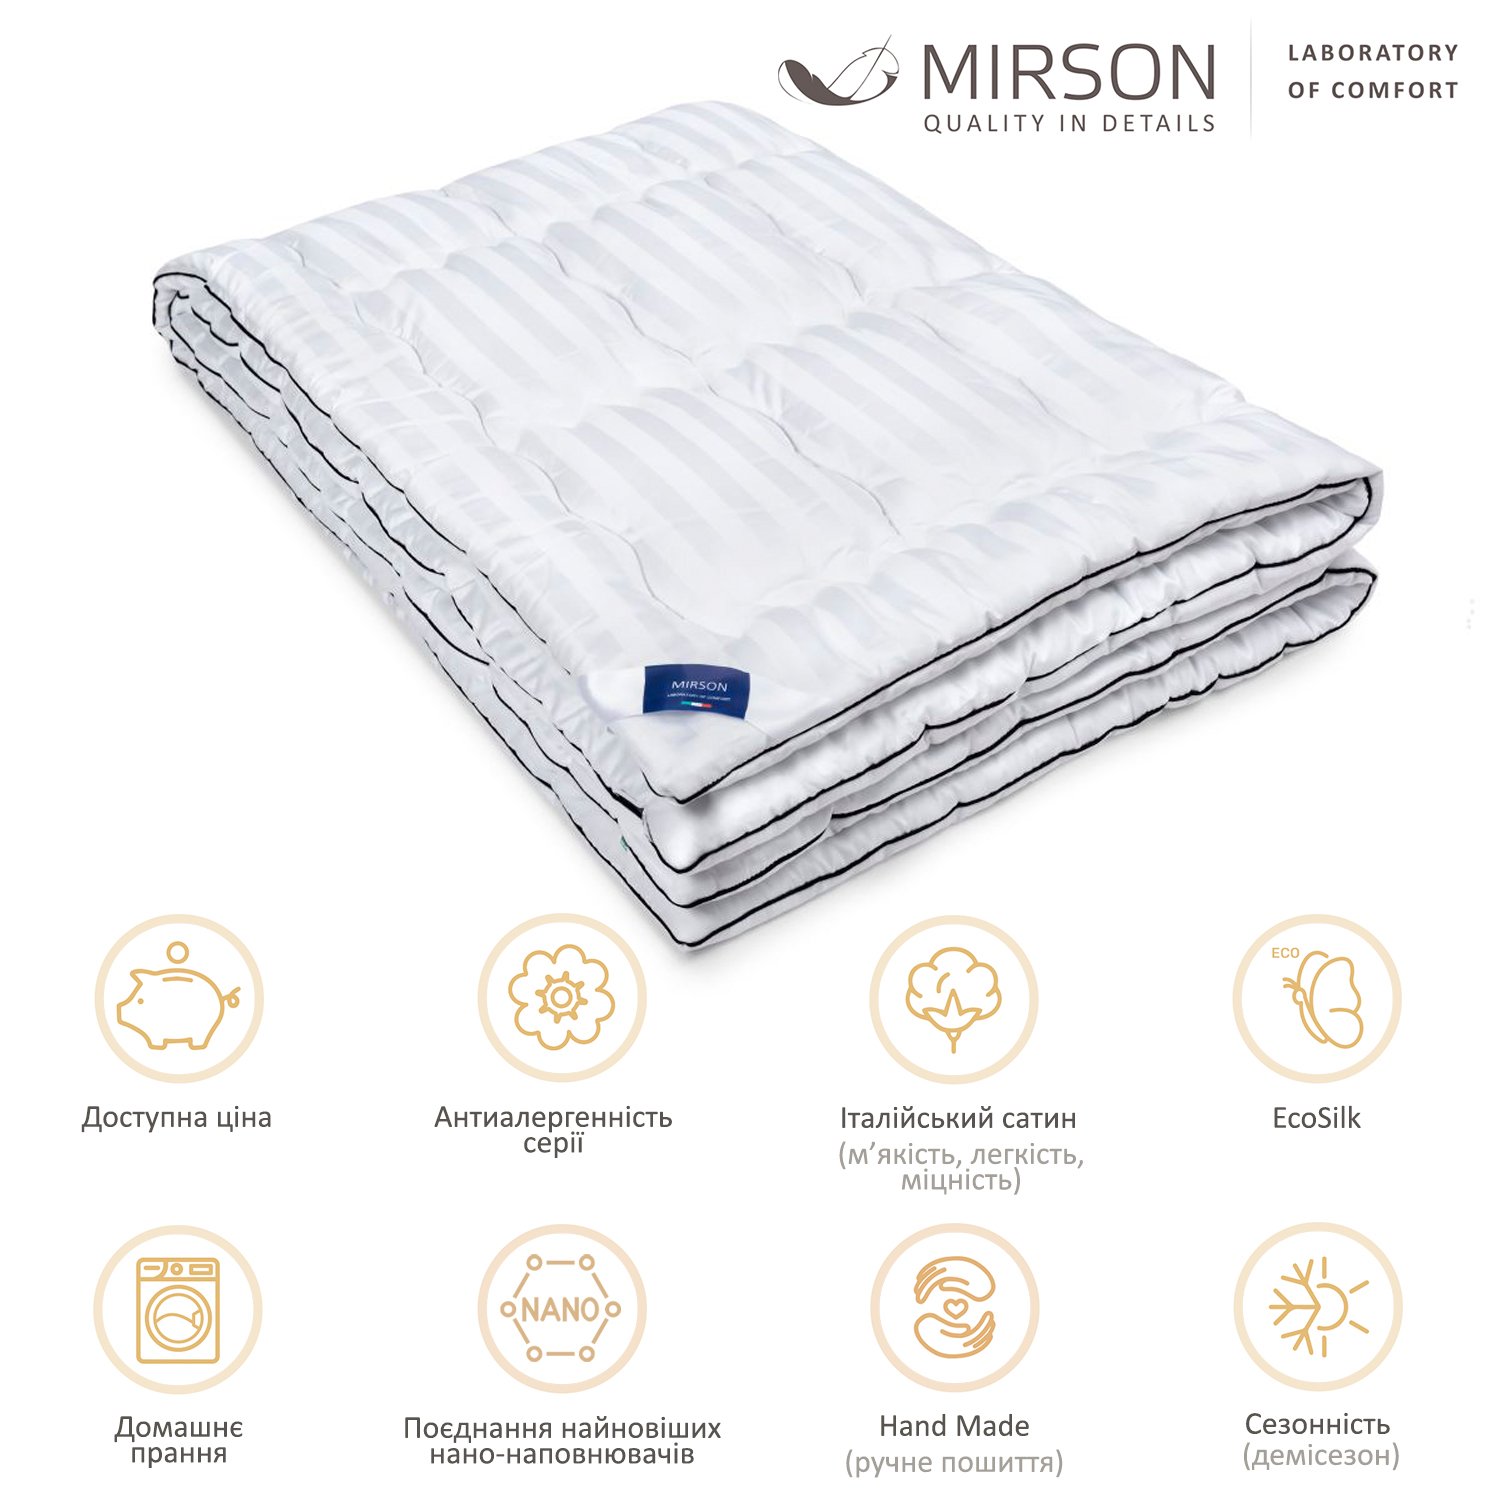 Одеяло антиаллергенное MirSon Royal Pearl Hand Made EcoSilk №066, демисезонное, 110x140 см, белое - фото 5